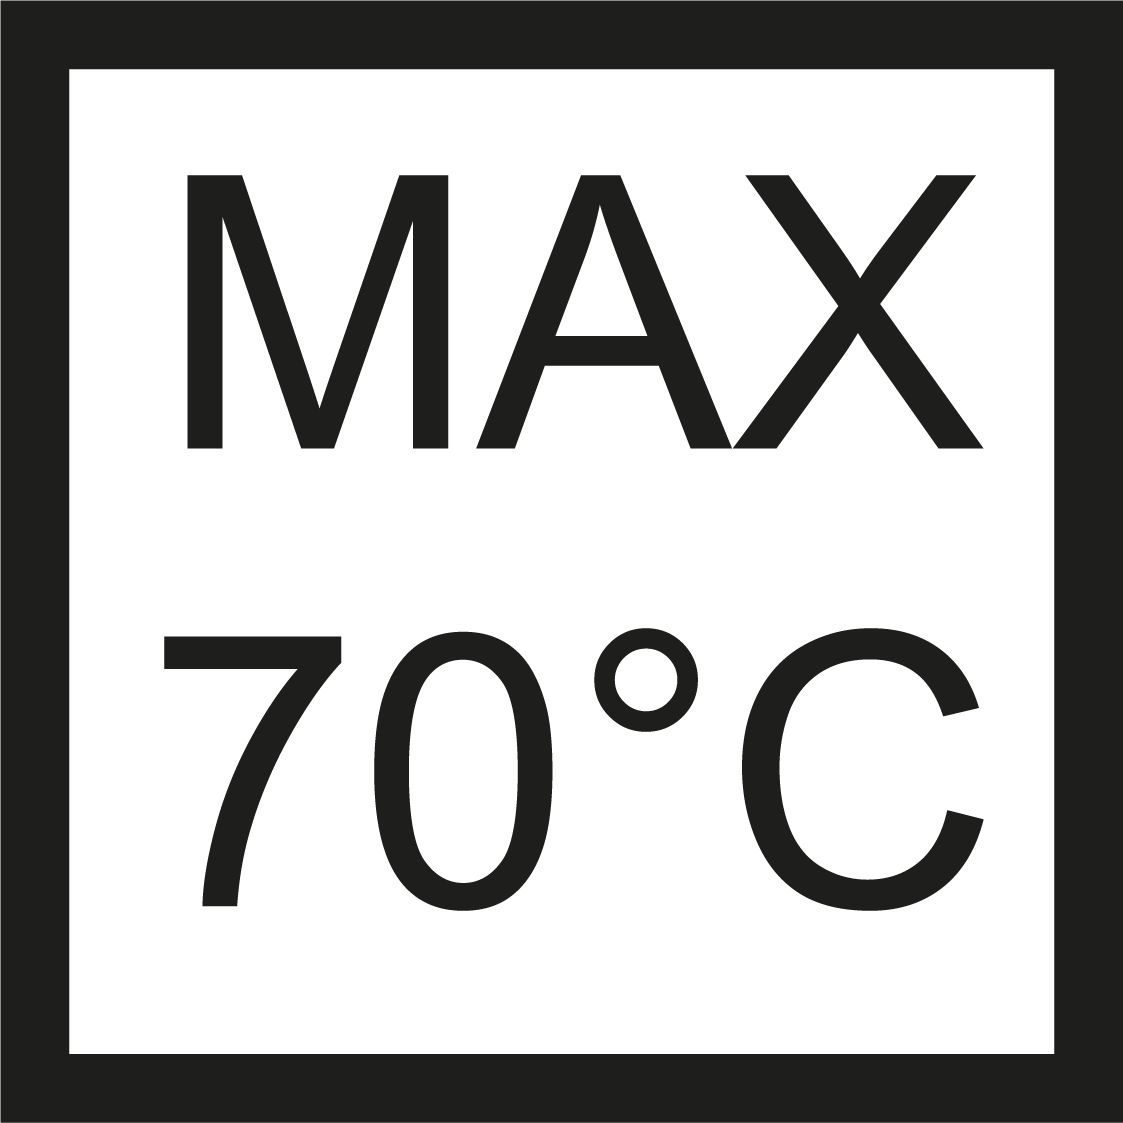 Max 70° C